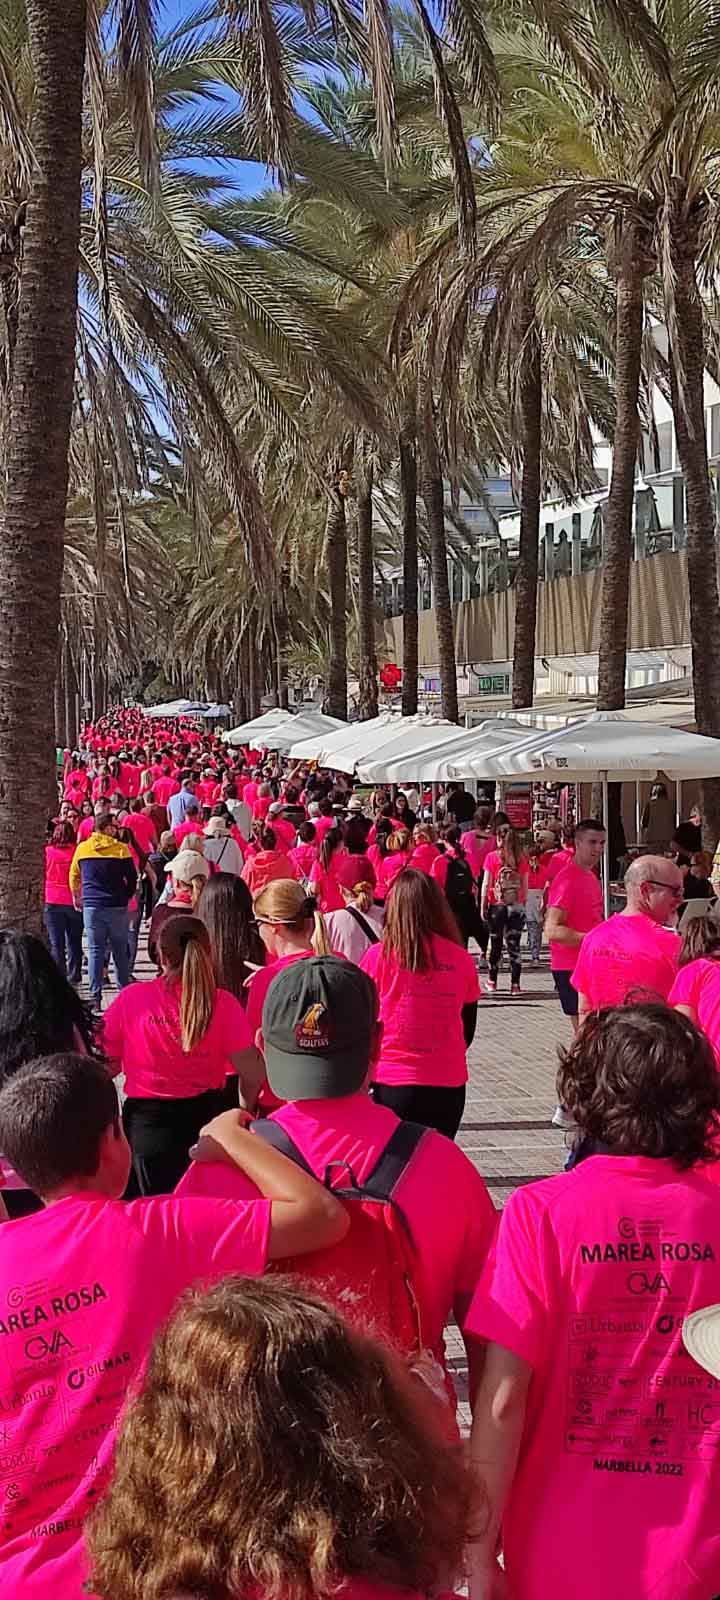 El Hospital Quirónsalud Marbella colabora en la carrera Marea Rosa a favor de la Asociación Española Contra el Cáncer